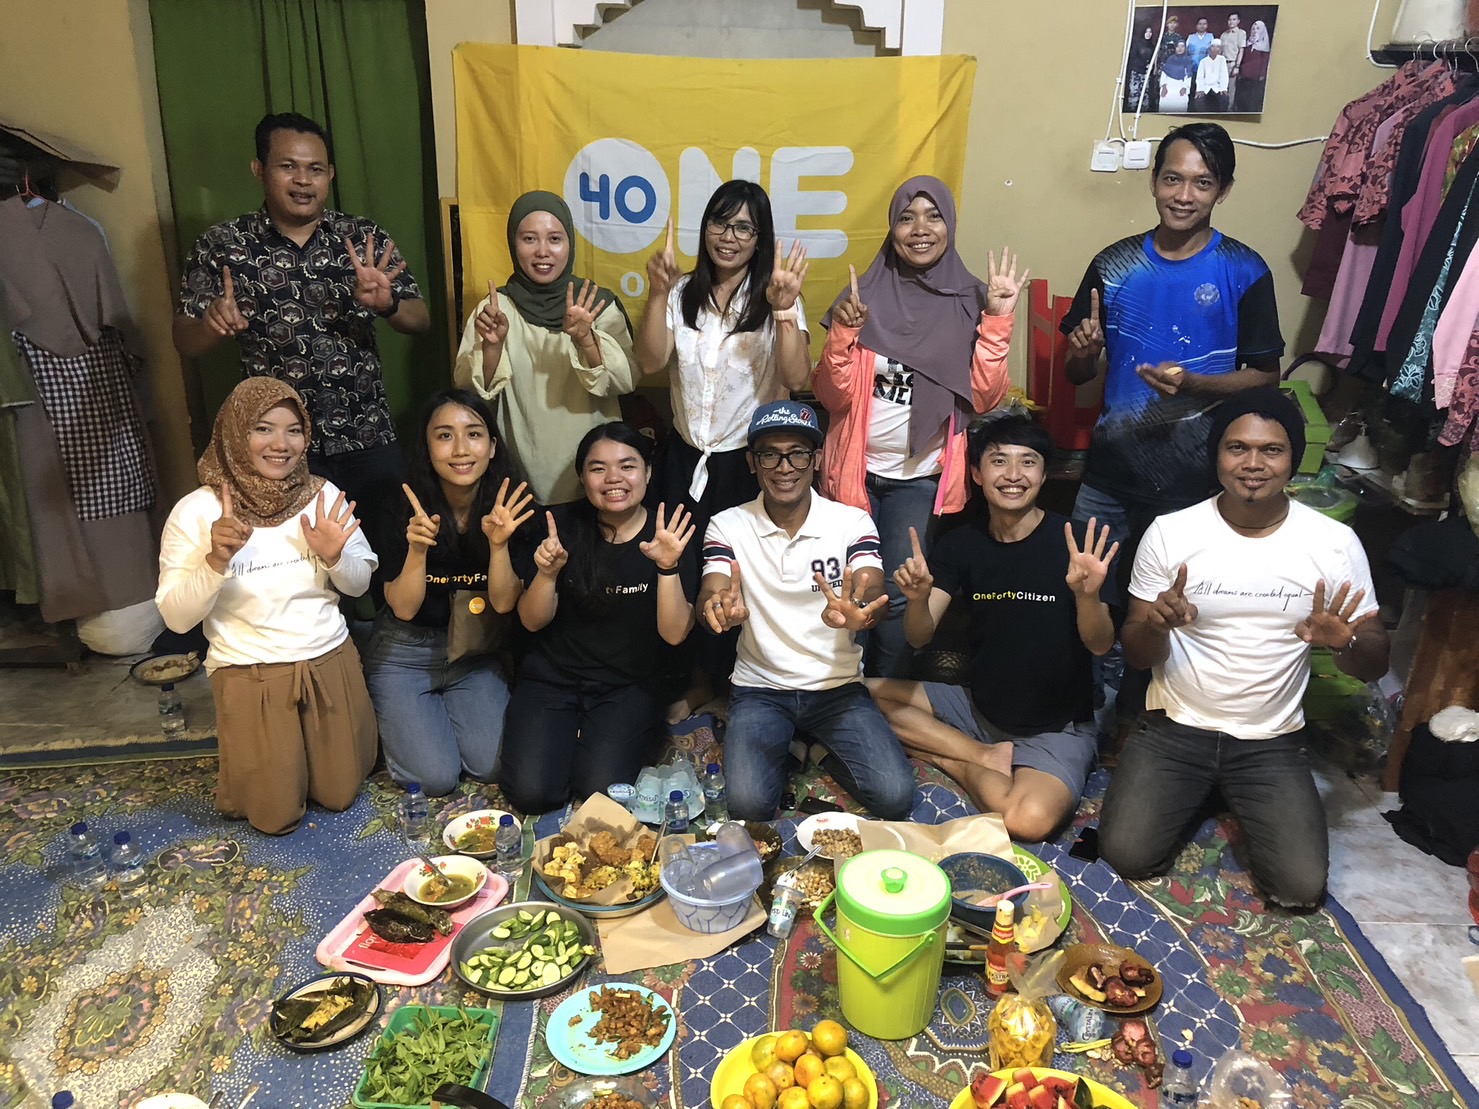 One-Forty mengunjungi pekerja migran di Indonesia lagi setelah tiga tahun.  (Sumber foto : One-Forty)